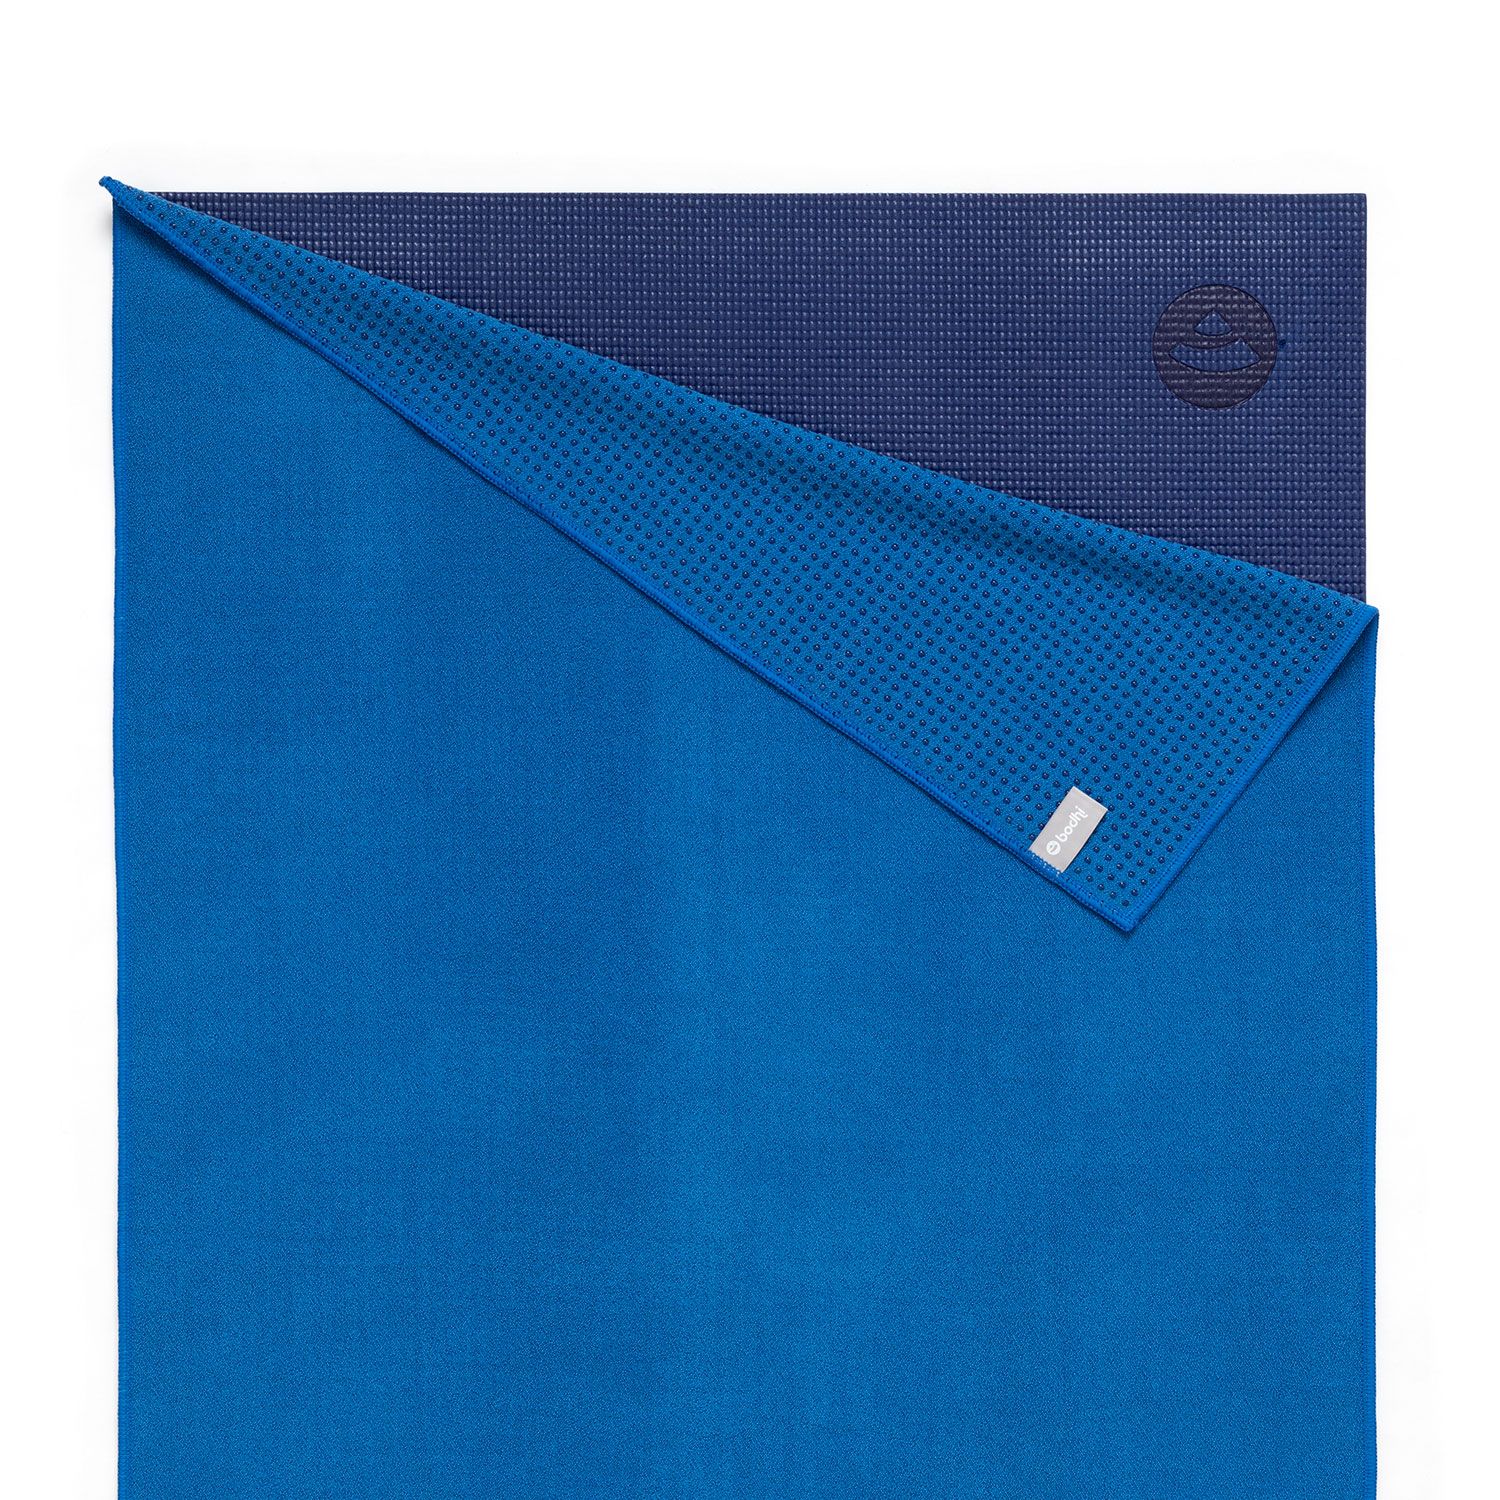 Grip² Yoga Towel mit Antirutschnoppen, blau 905-B